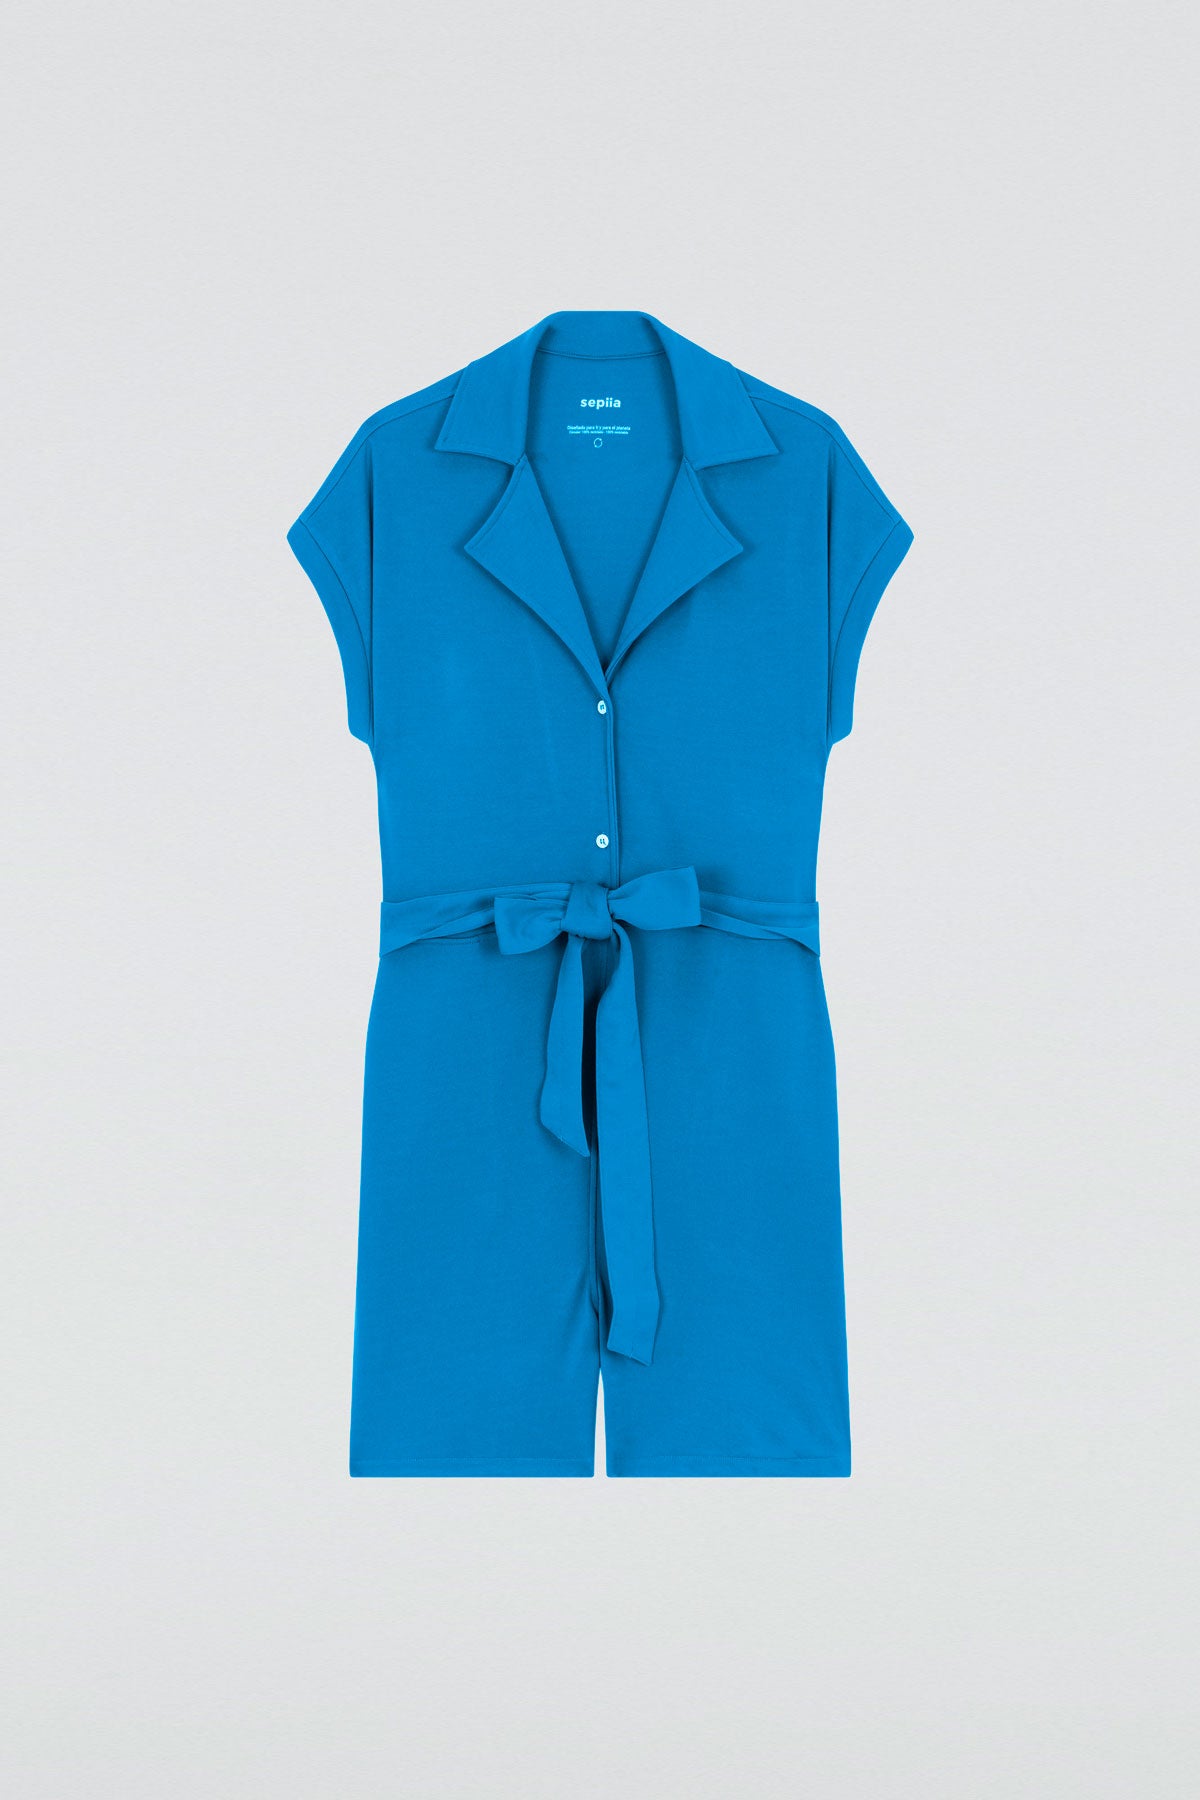 Mono corto de mujer color azul con detalle de cinturón y bolsillos laterales para mayor comodidad. Foto plano